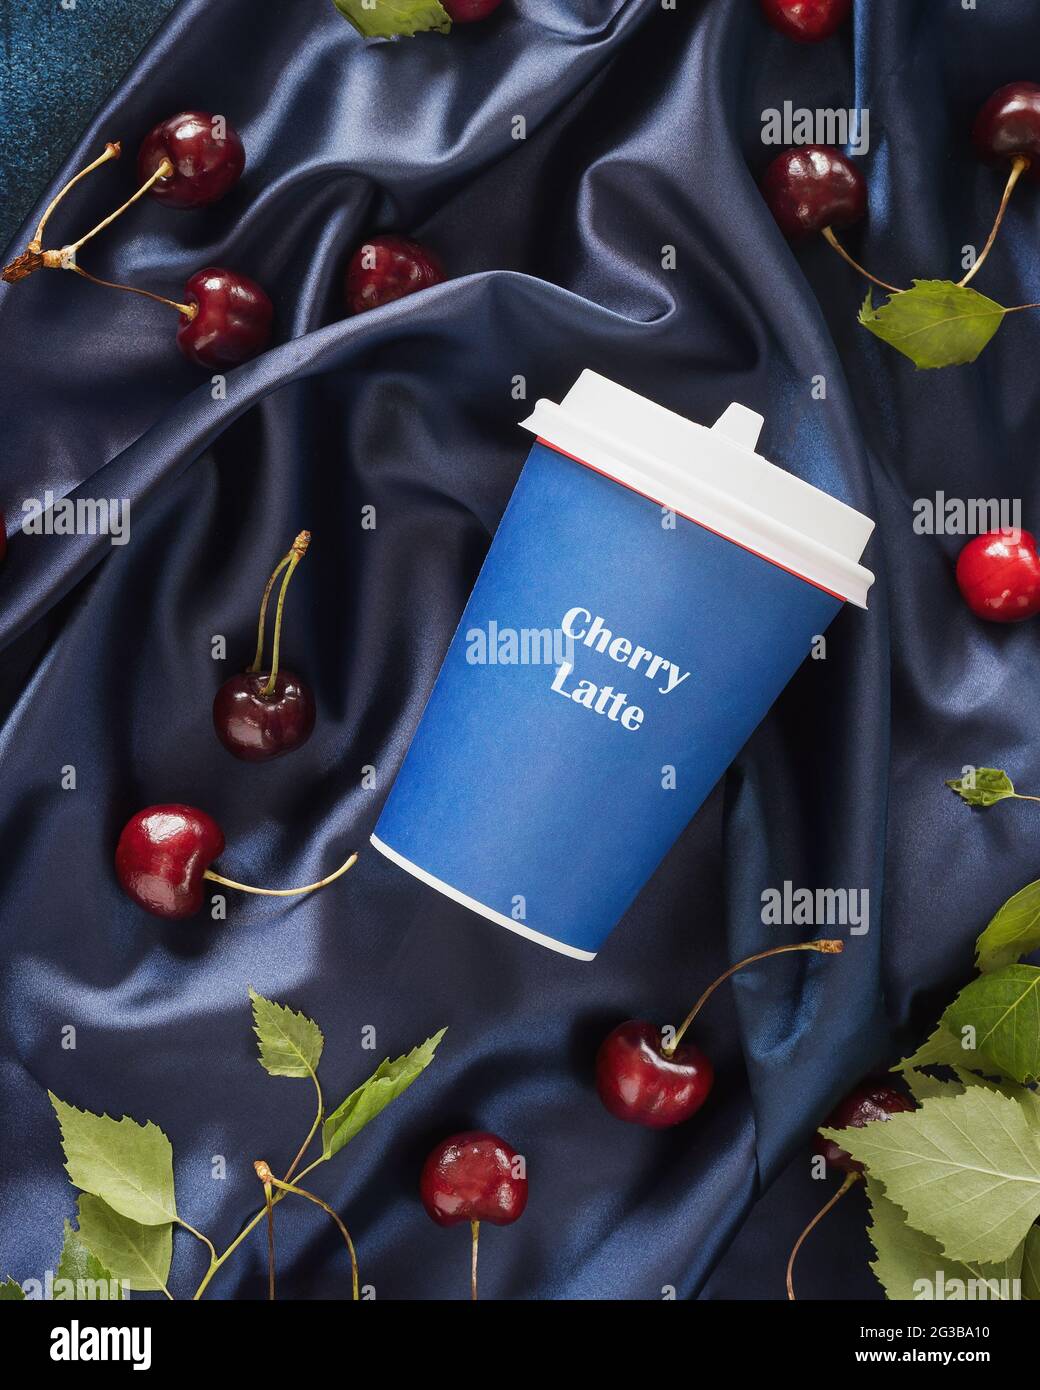 Cherry Latte, eine neue Art von Kaffee. Lebensmittelkomposition mit einer Tasse Kaffee, Kirschen und Blättern auf einem blauen, satinierten, gefalteten Hintergrund. Kaffee zum trinken Stockfoto